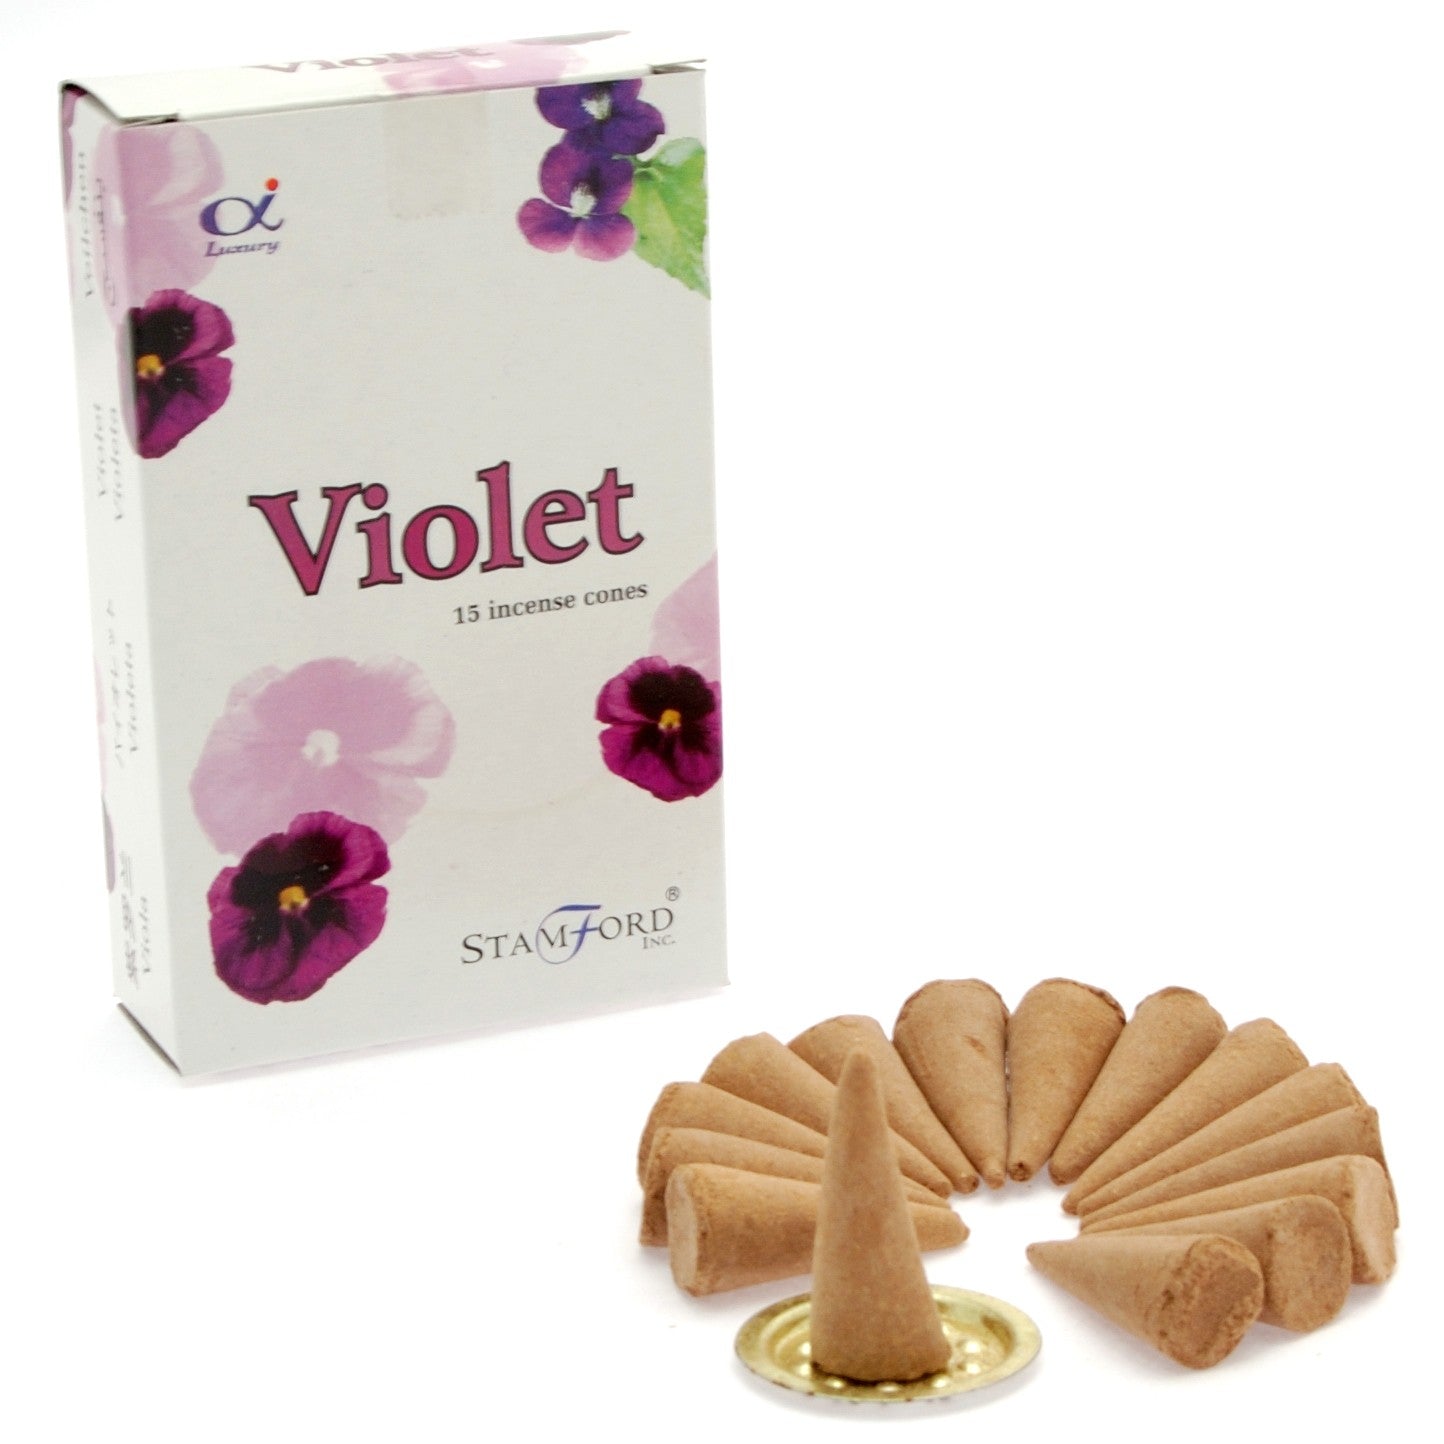 View Violet Cones information